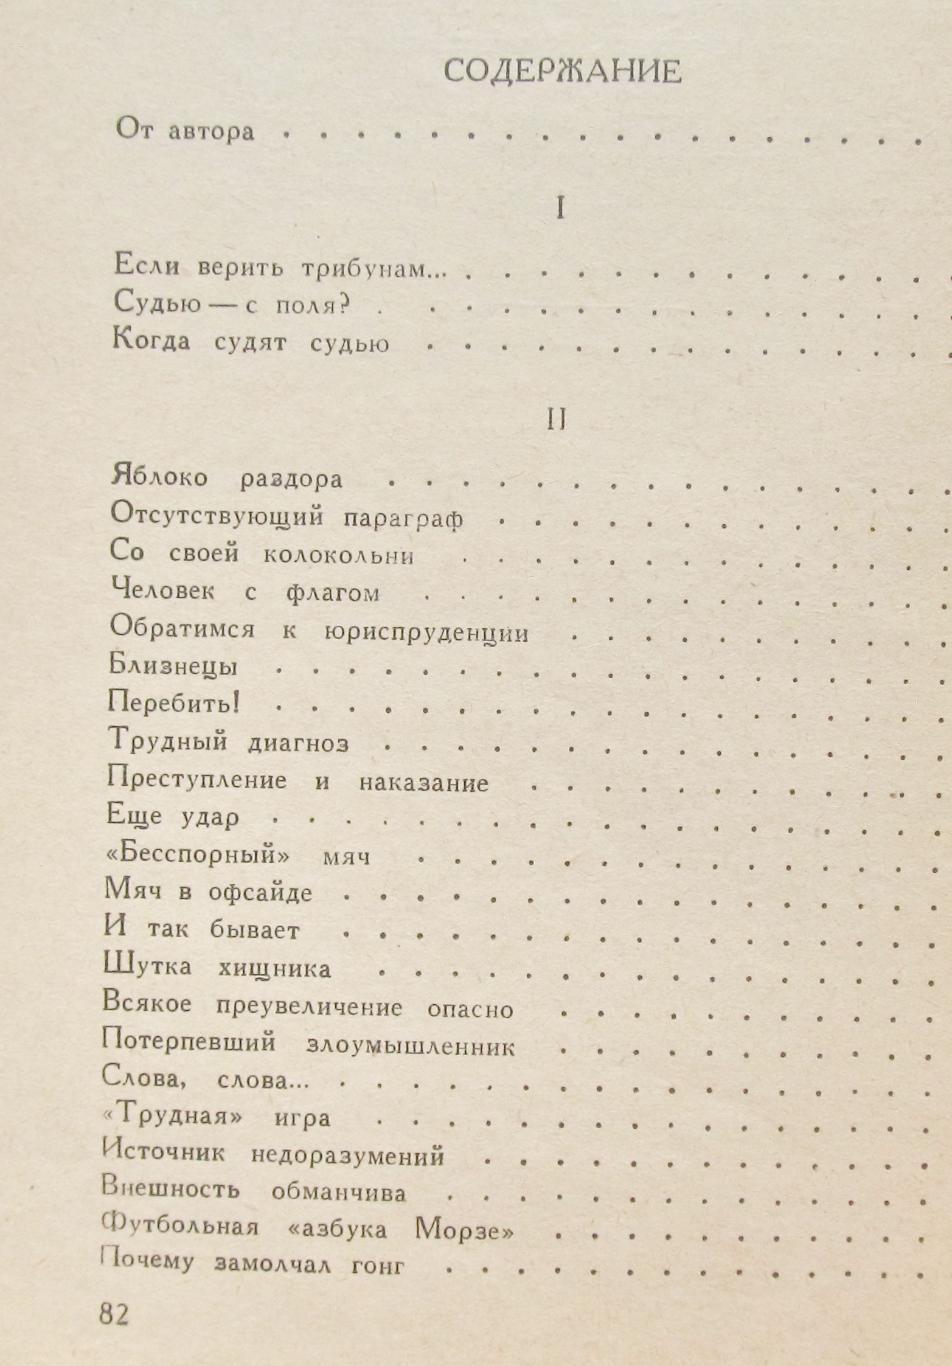 М. Рафалов Разговор со зрителем, 82стр. 1963г. 3